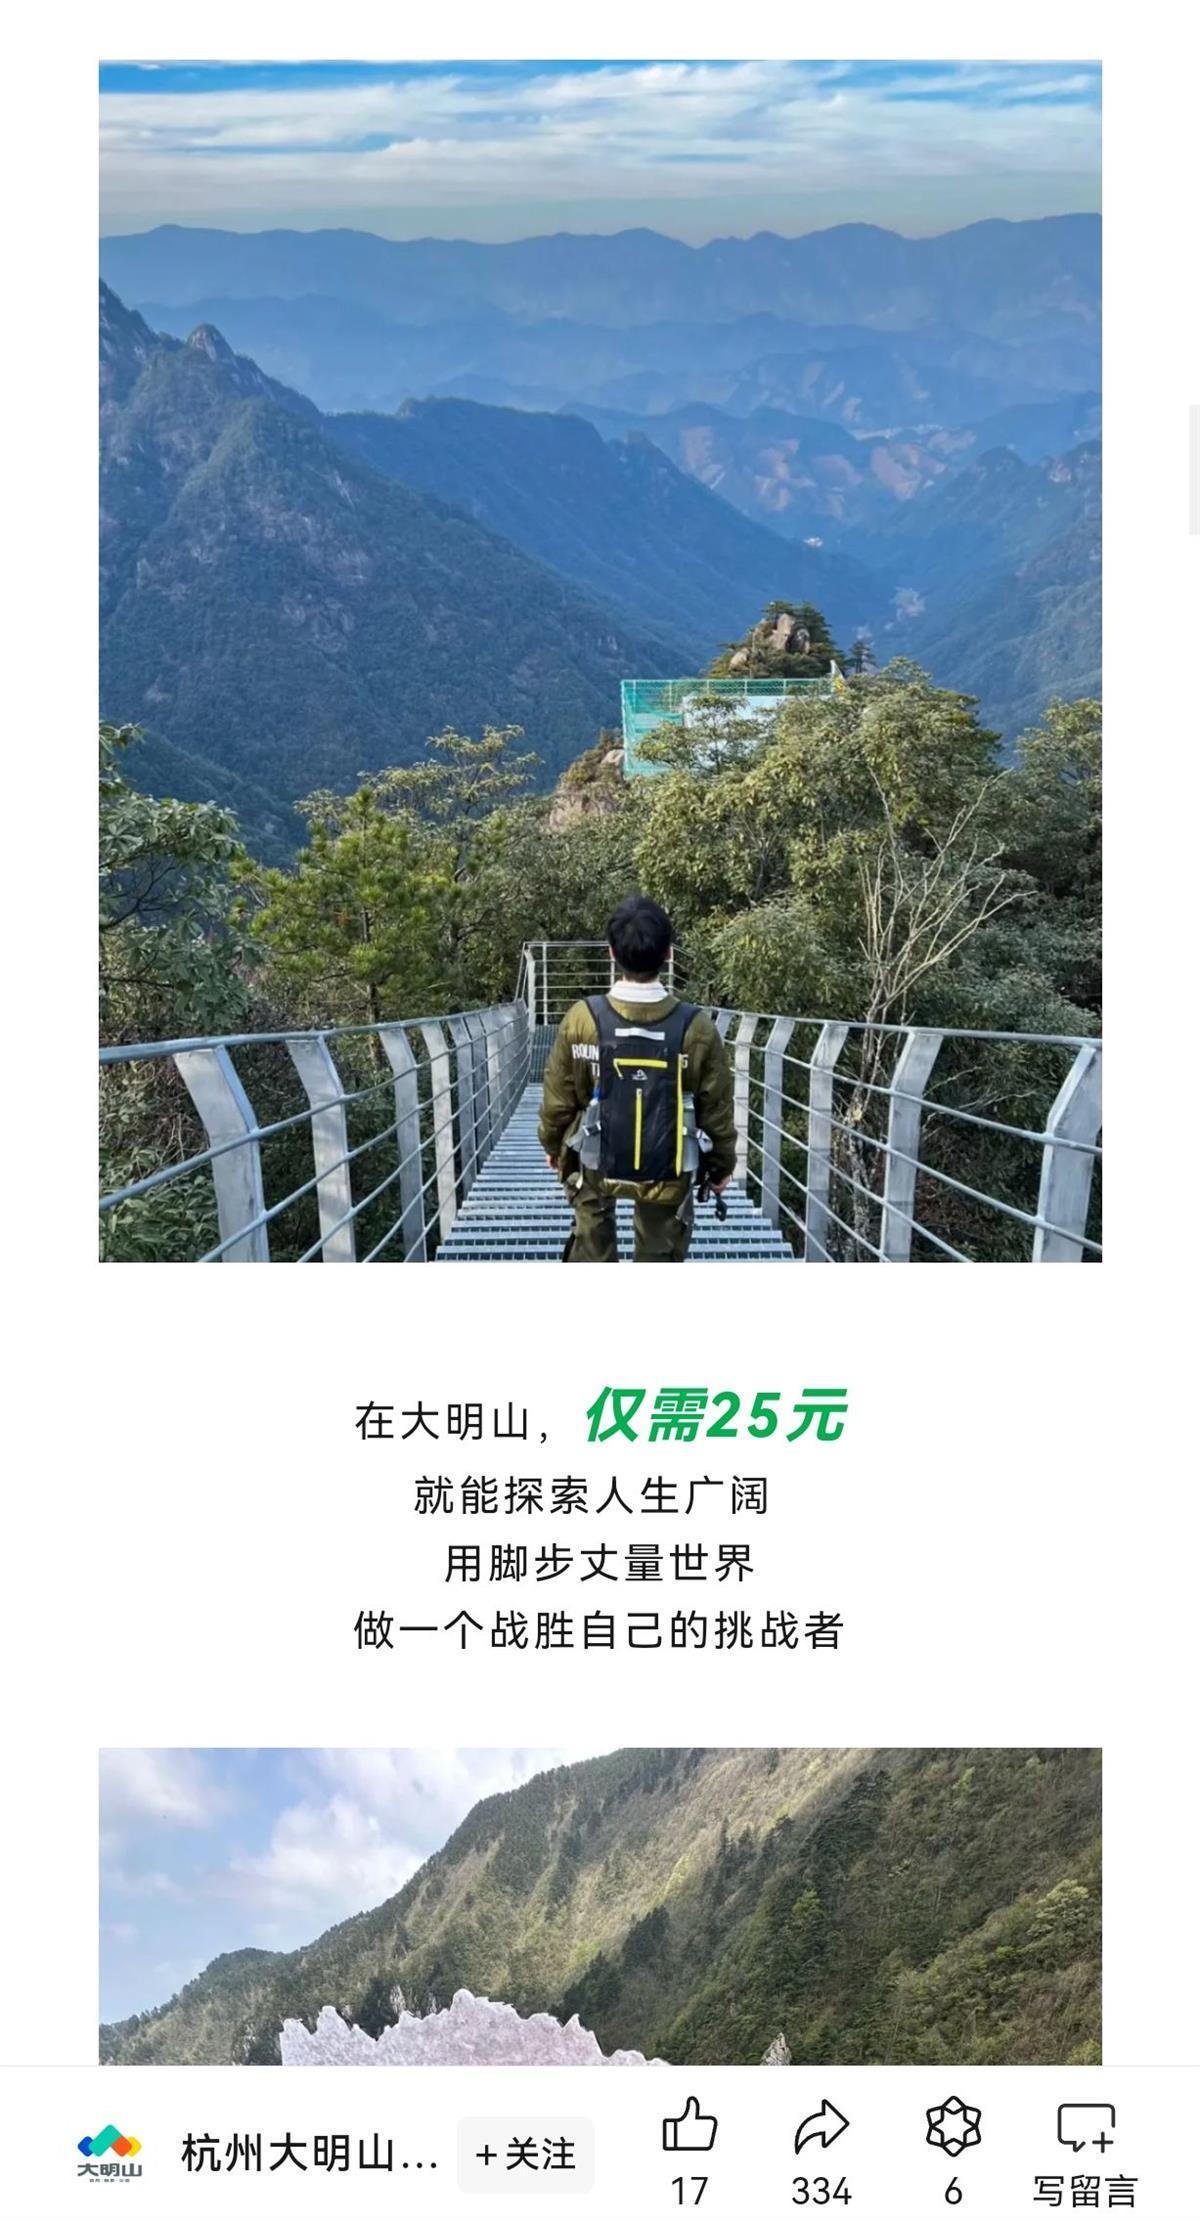 杭州大明山景区微信公众号分布的文章截图公开信息显示,上述游客所